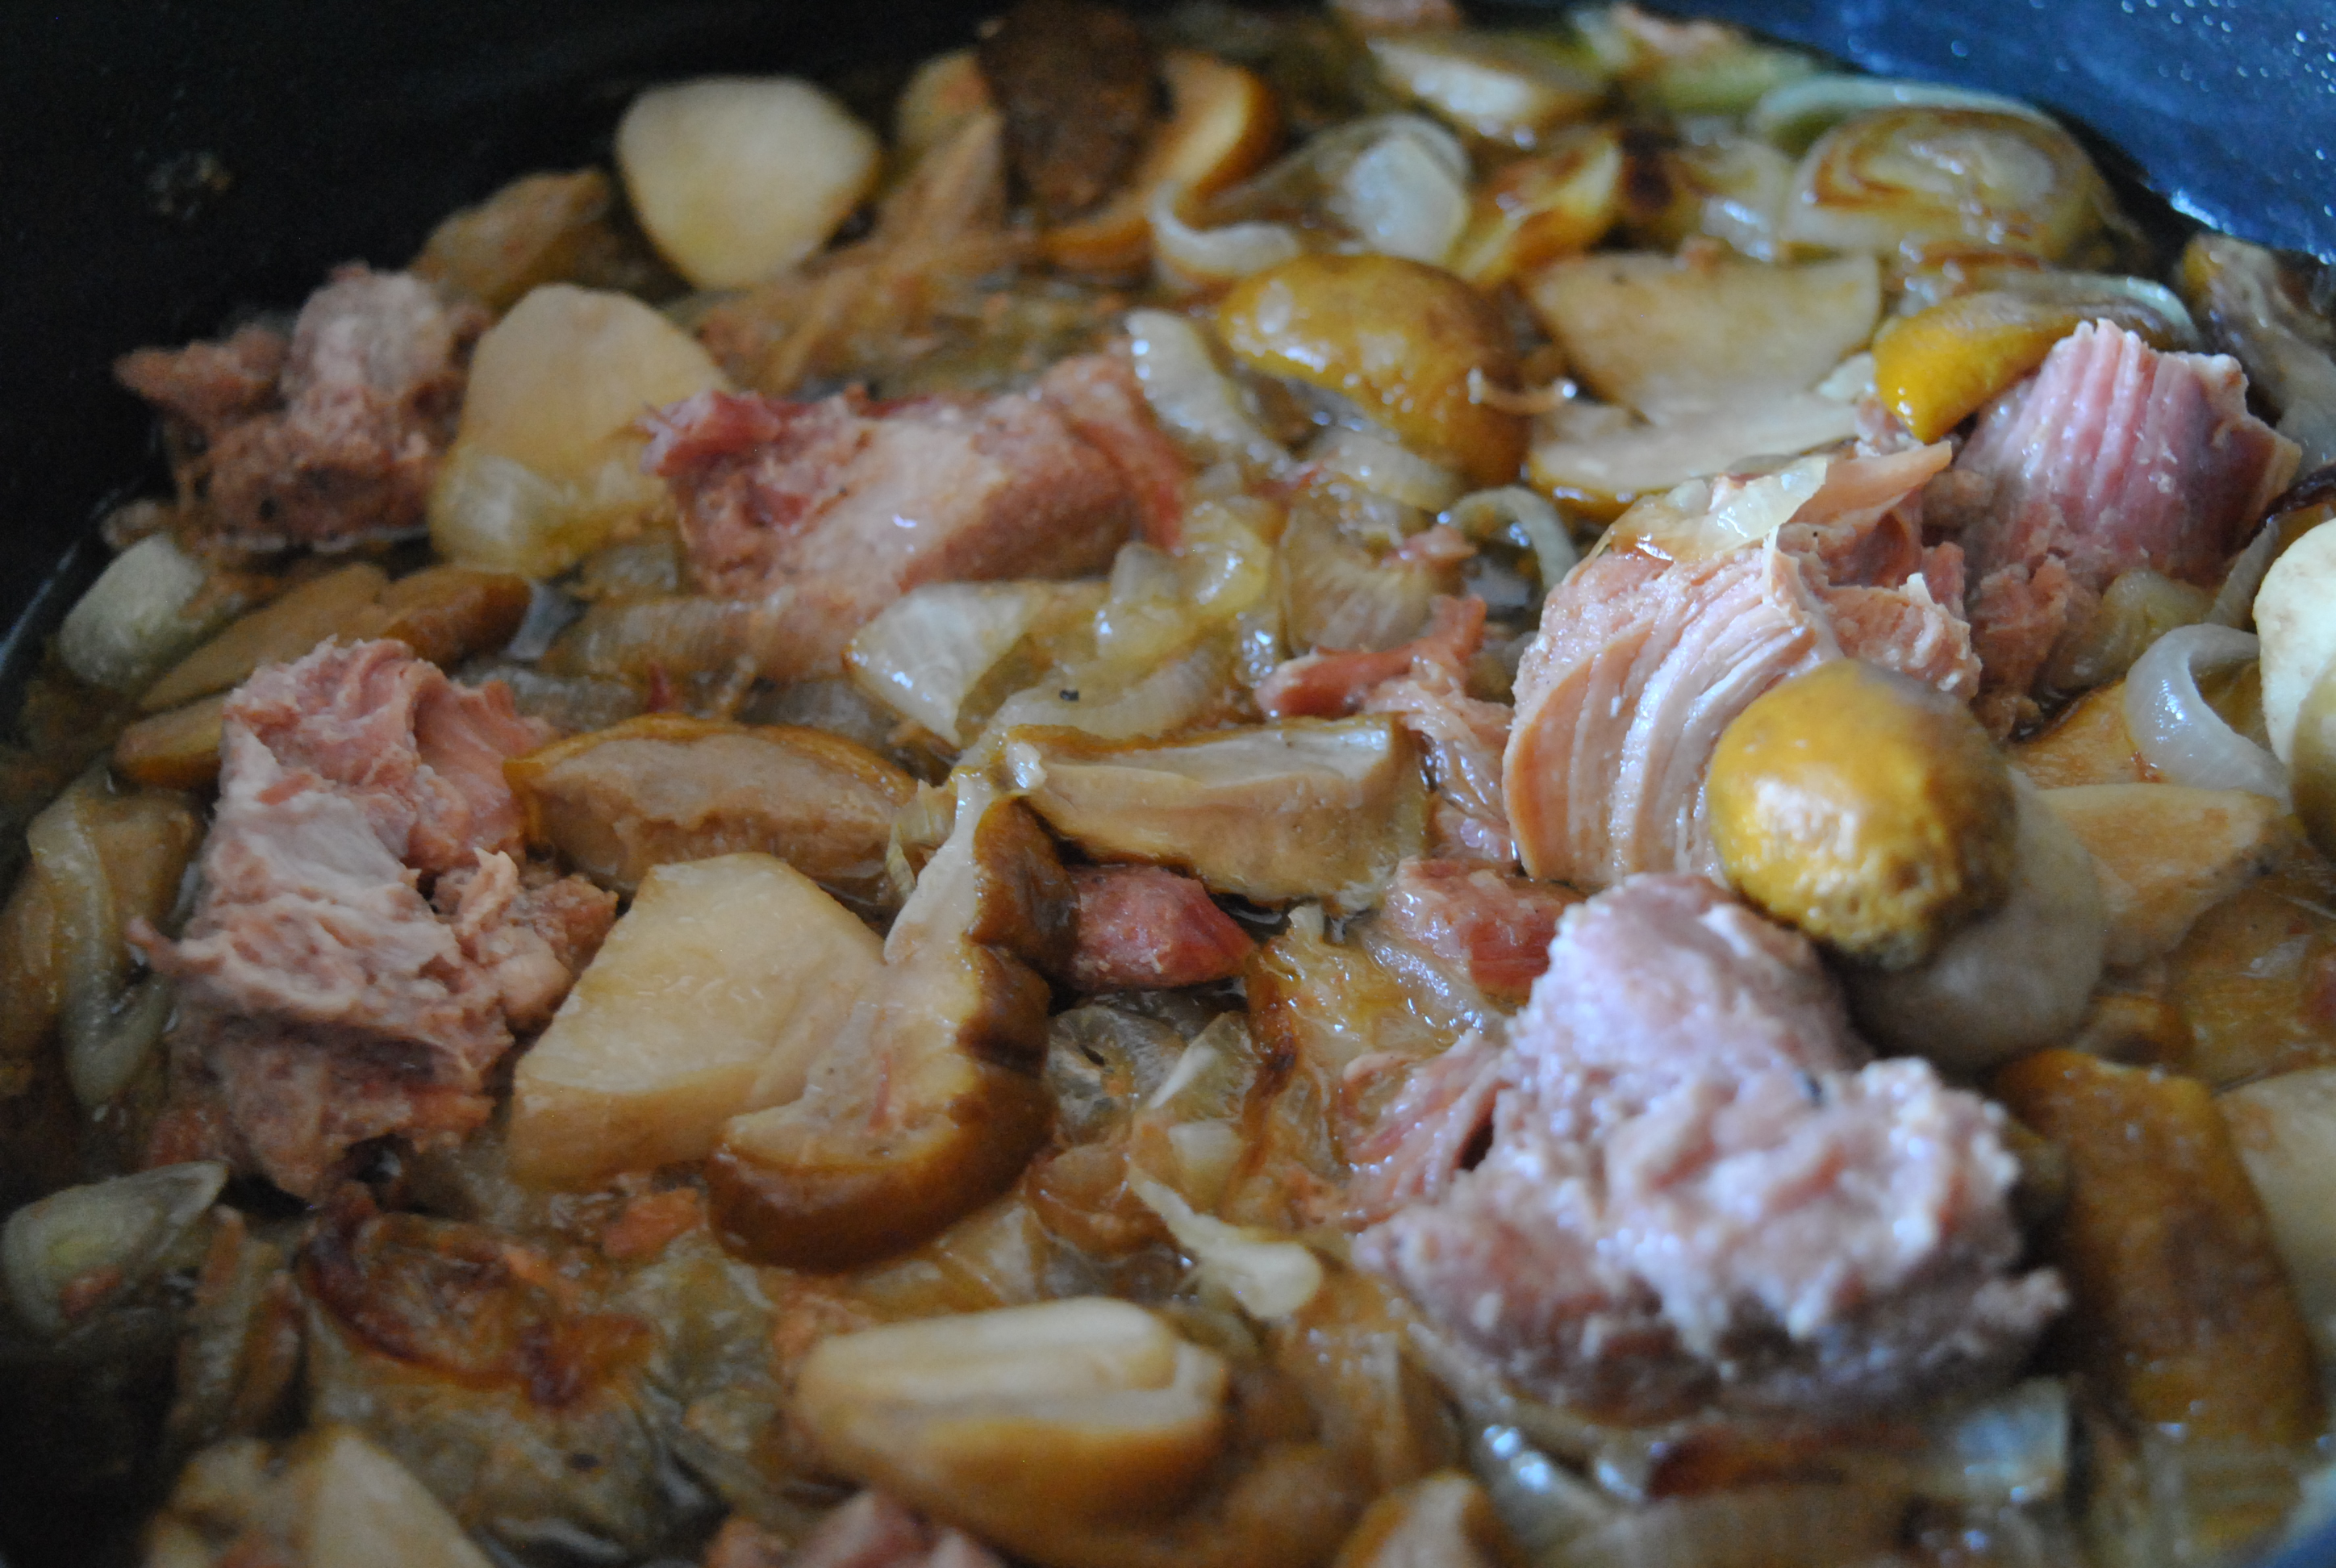 Полента с соусом из белых грибов с тушеным мясом кабана: шаг 10